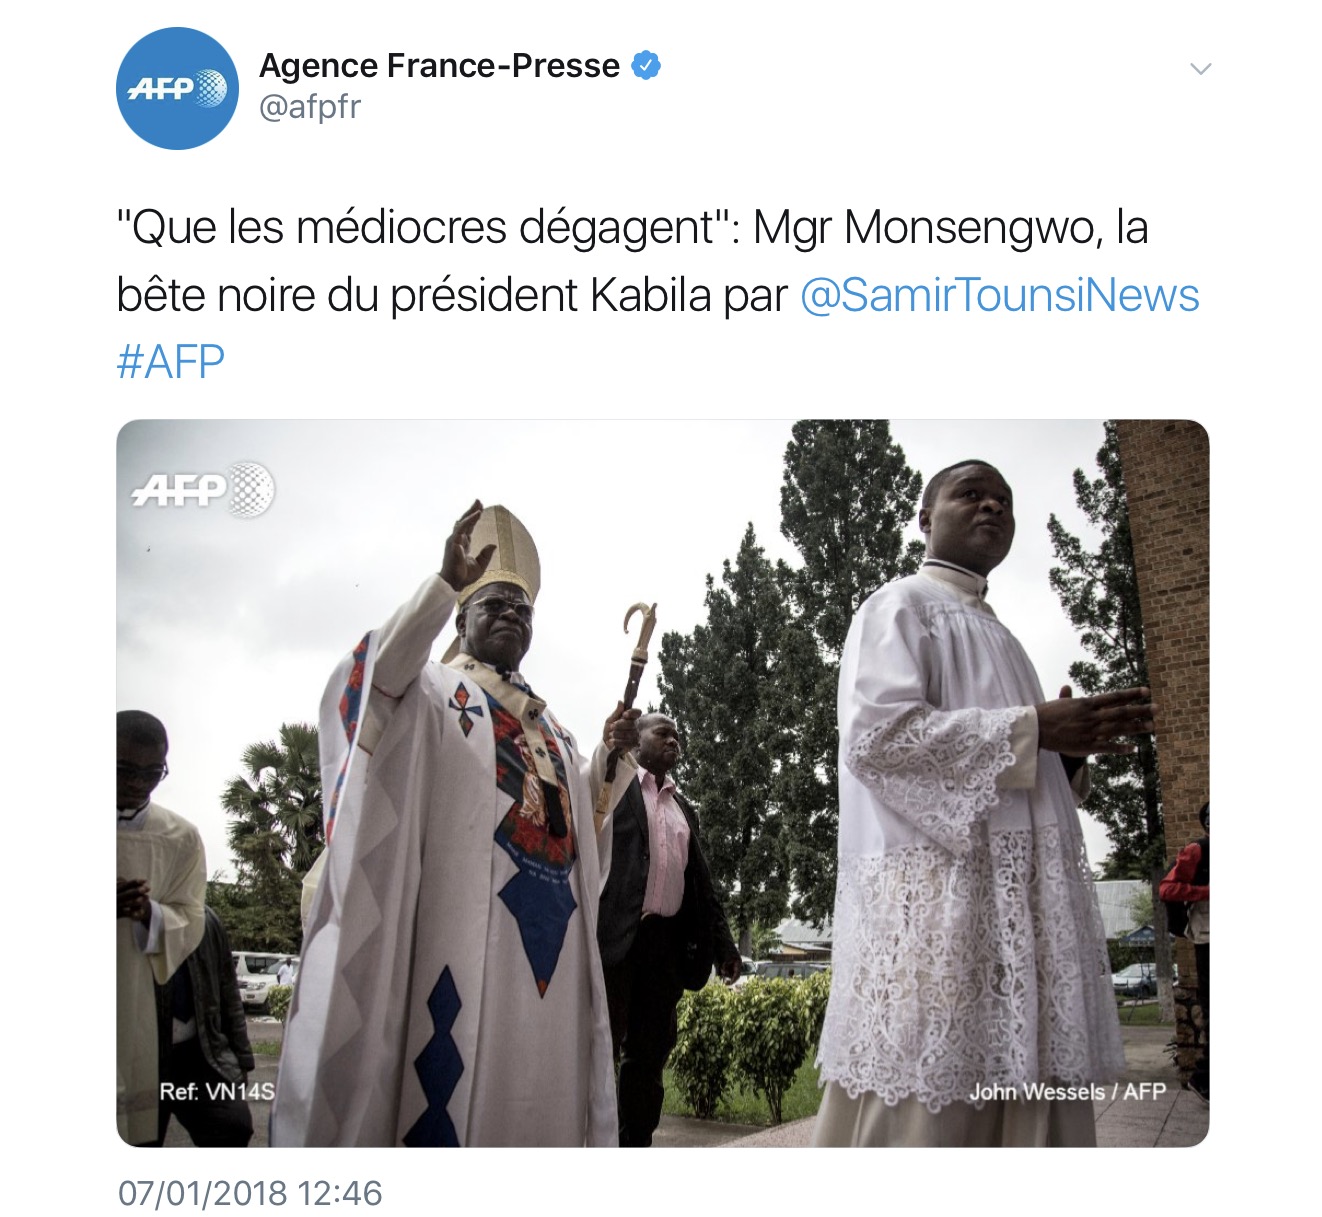 Le tweet du jour: quand l’AFP parle du combat de Mgr Monsengwo